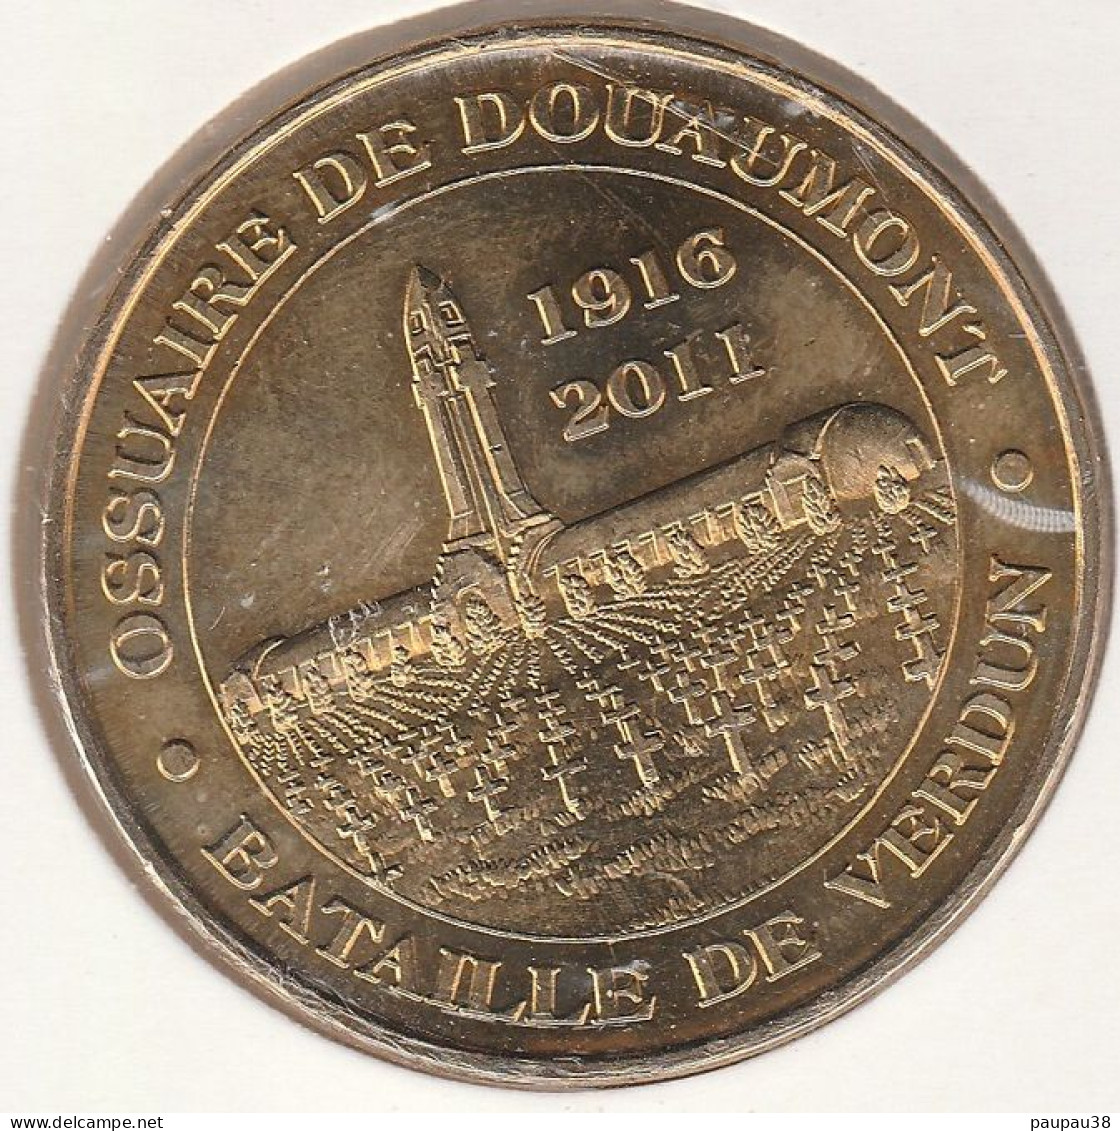 MONNAIE DE PARIS 2011 - 55 DOUAUMONT Ossuaire De Douaumont - Bataille De Verdun 1916 -2011 - 2011